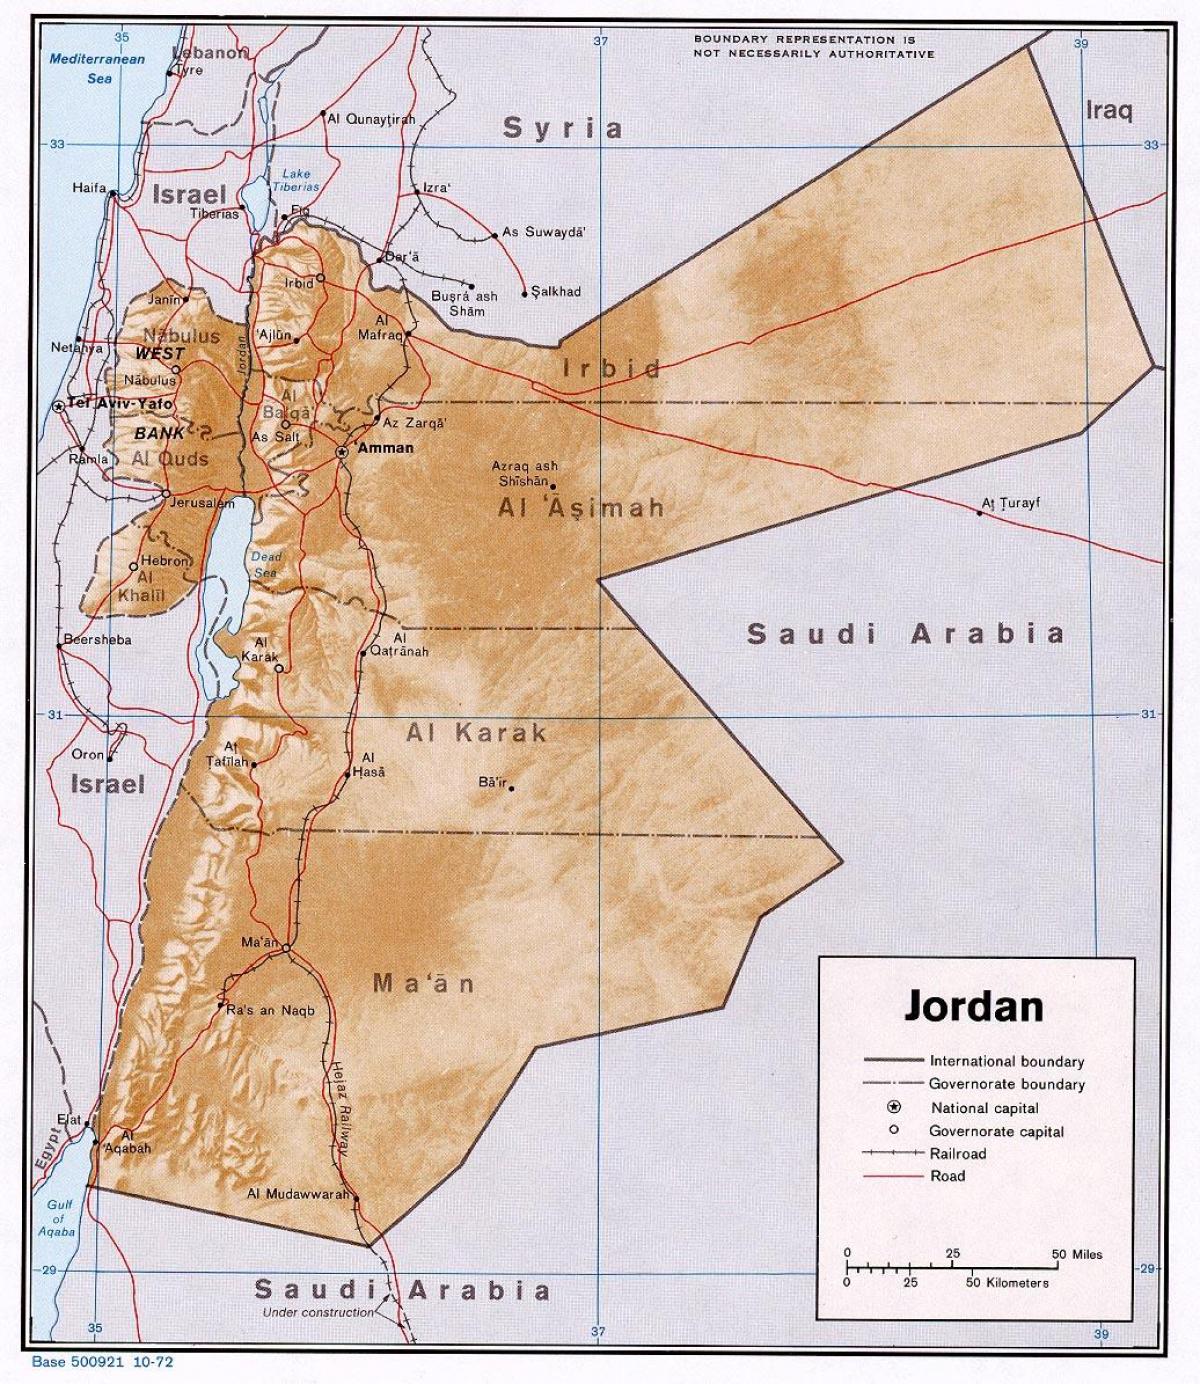 la mappa mostra la Giordania